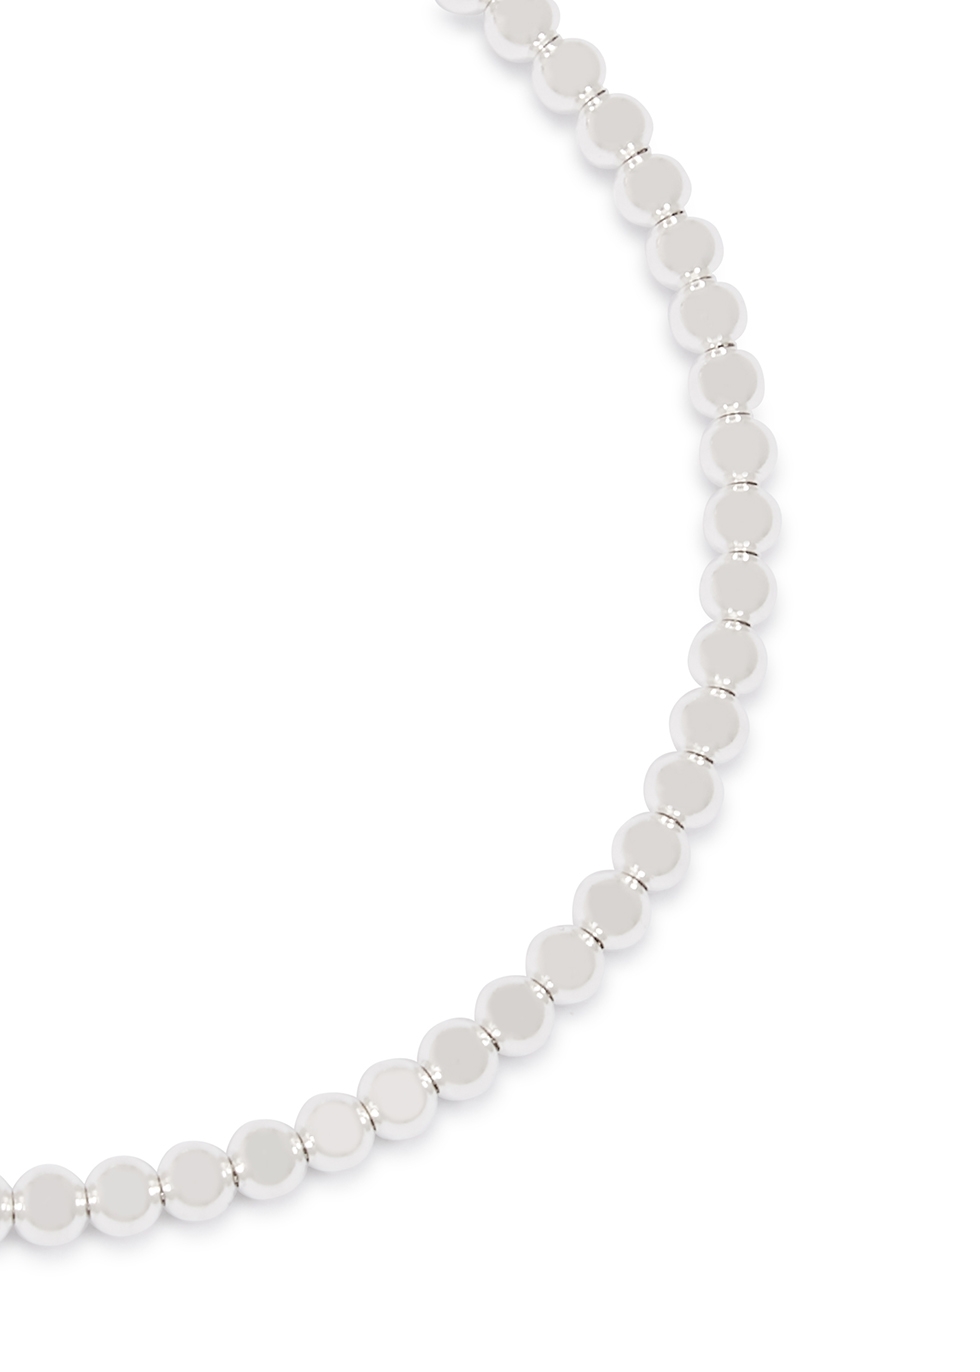 Le Gramme 11g polished sterling silver beads bracelet - Harvey Nichols